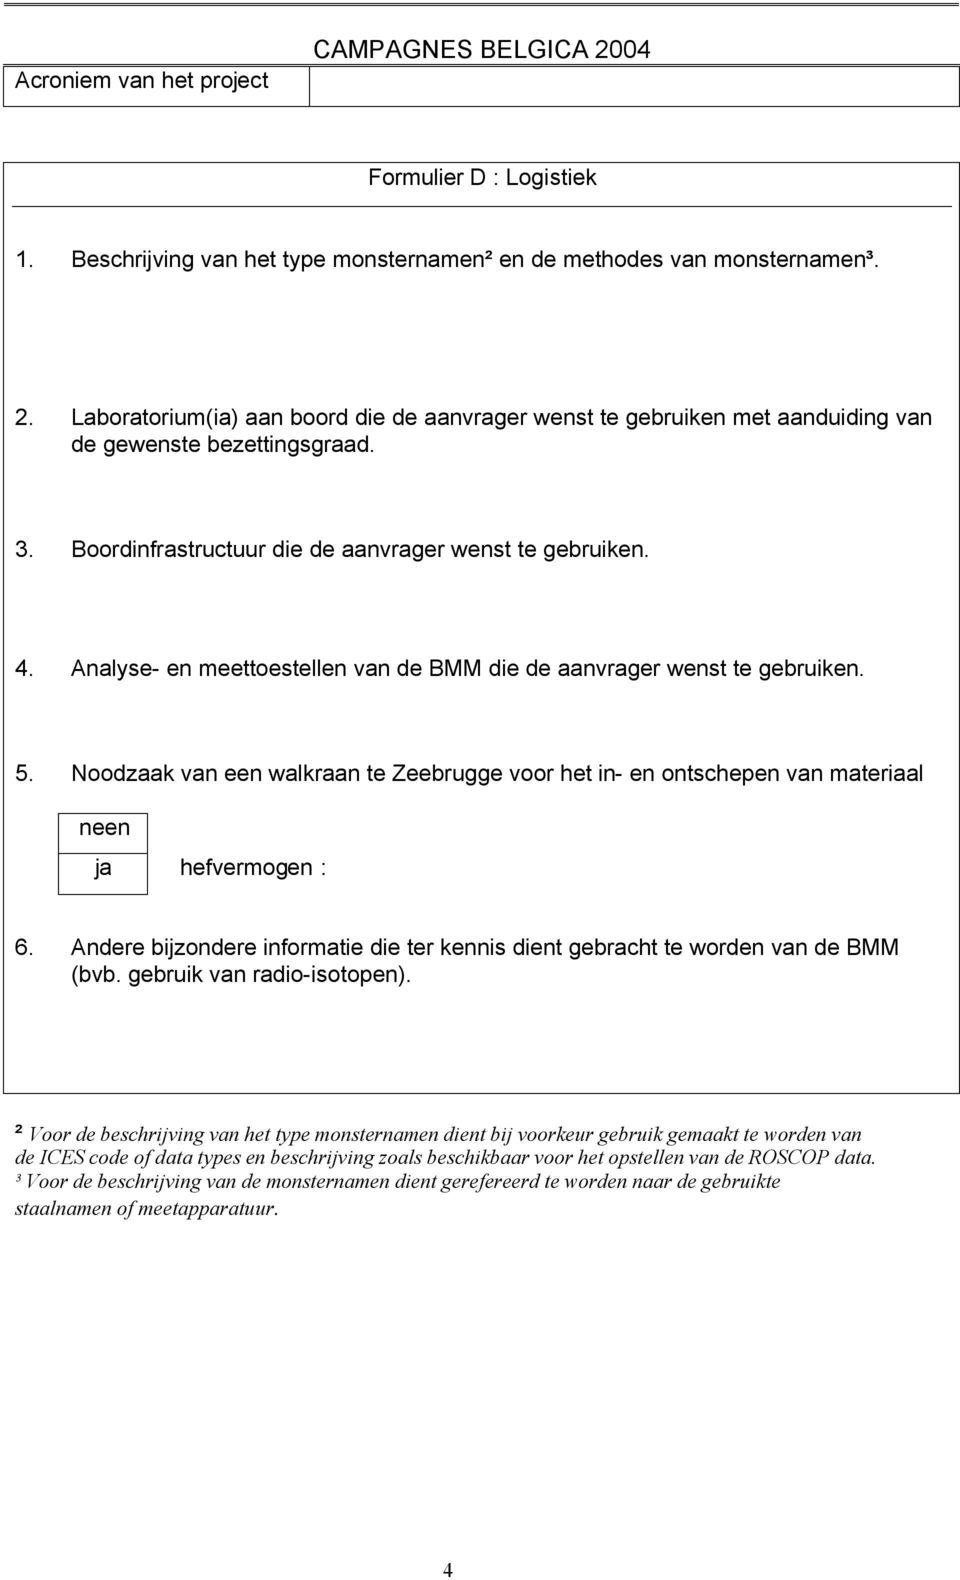 Analyse- en meettoestellen van de BMM die de aanvrager wenst te gebruiken. 5. Noodzaak van een walkraan te Zeebrugge voor het in- en ontschepen van materiaal è hefvermogen : 6.